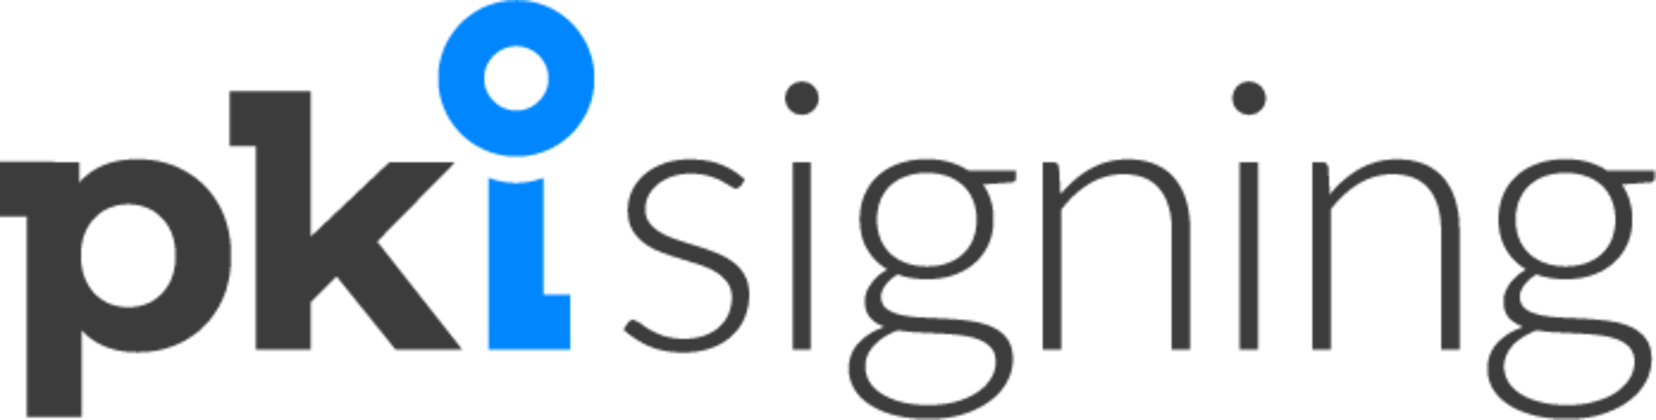 Pkisigning logo